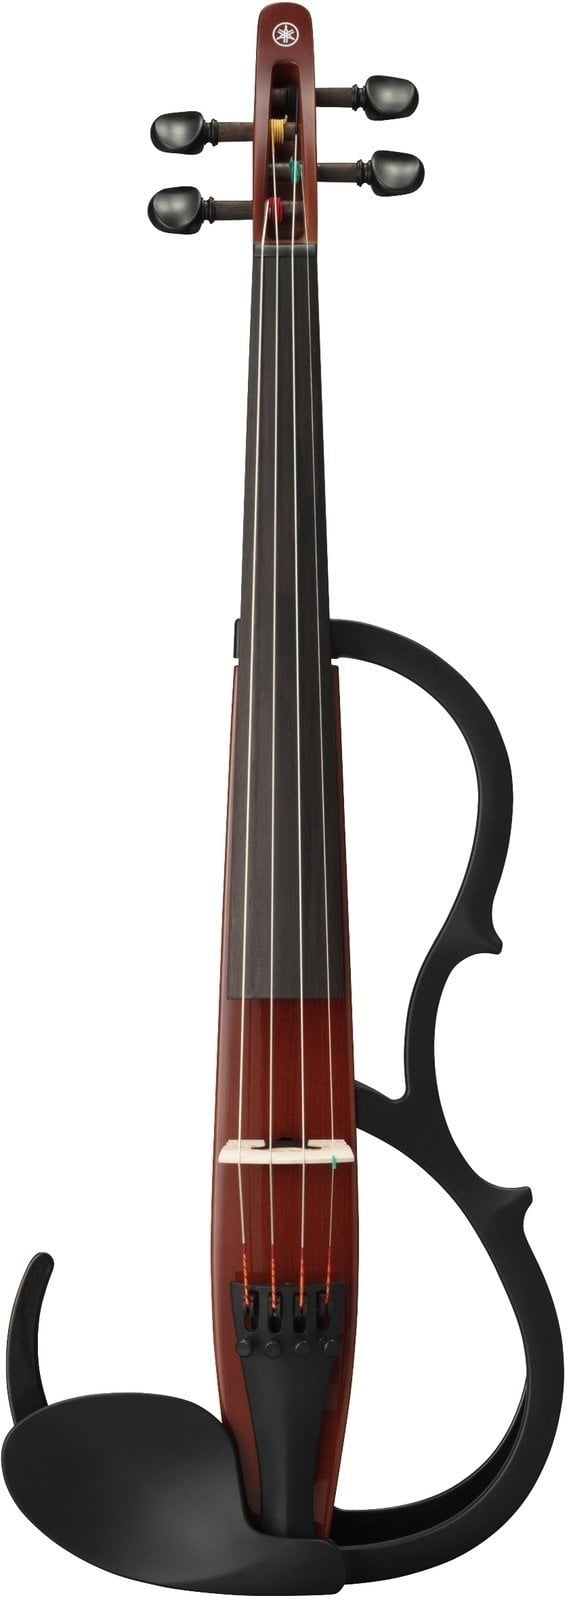 E-Violine Yamaha YSV104 4/4 E-Violine